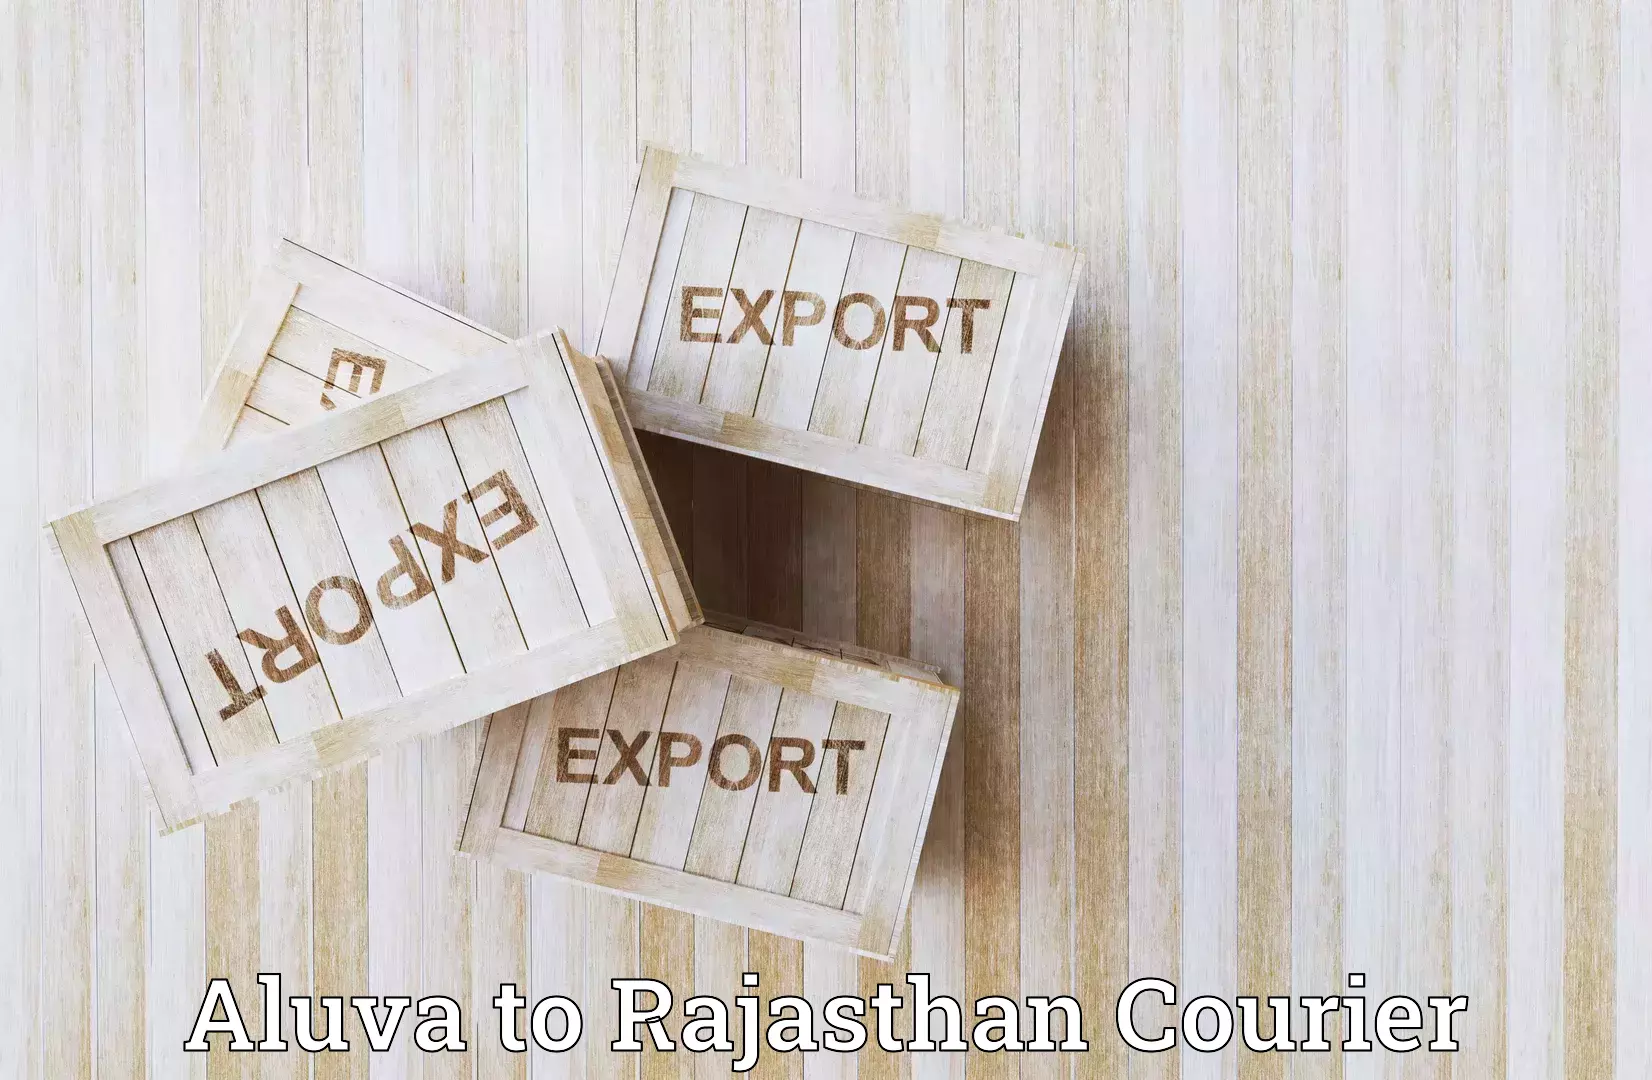 Digital shipping tools Aluva to Ratangarh Churu